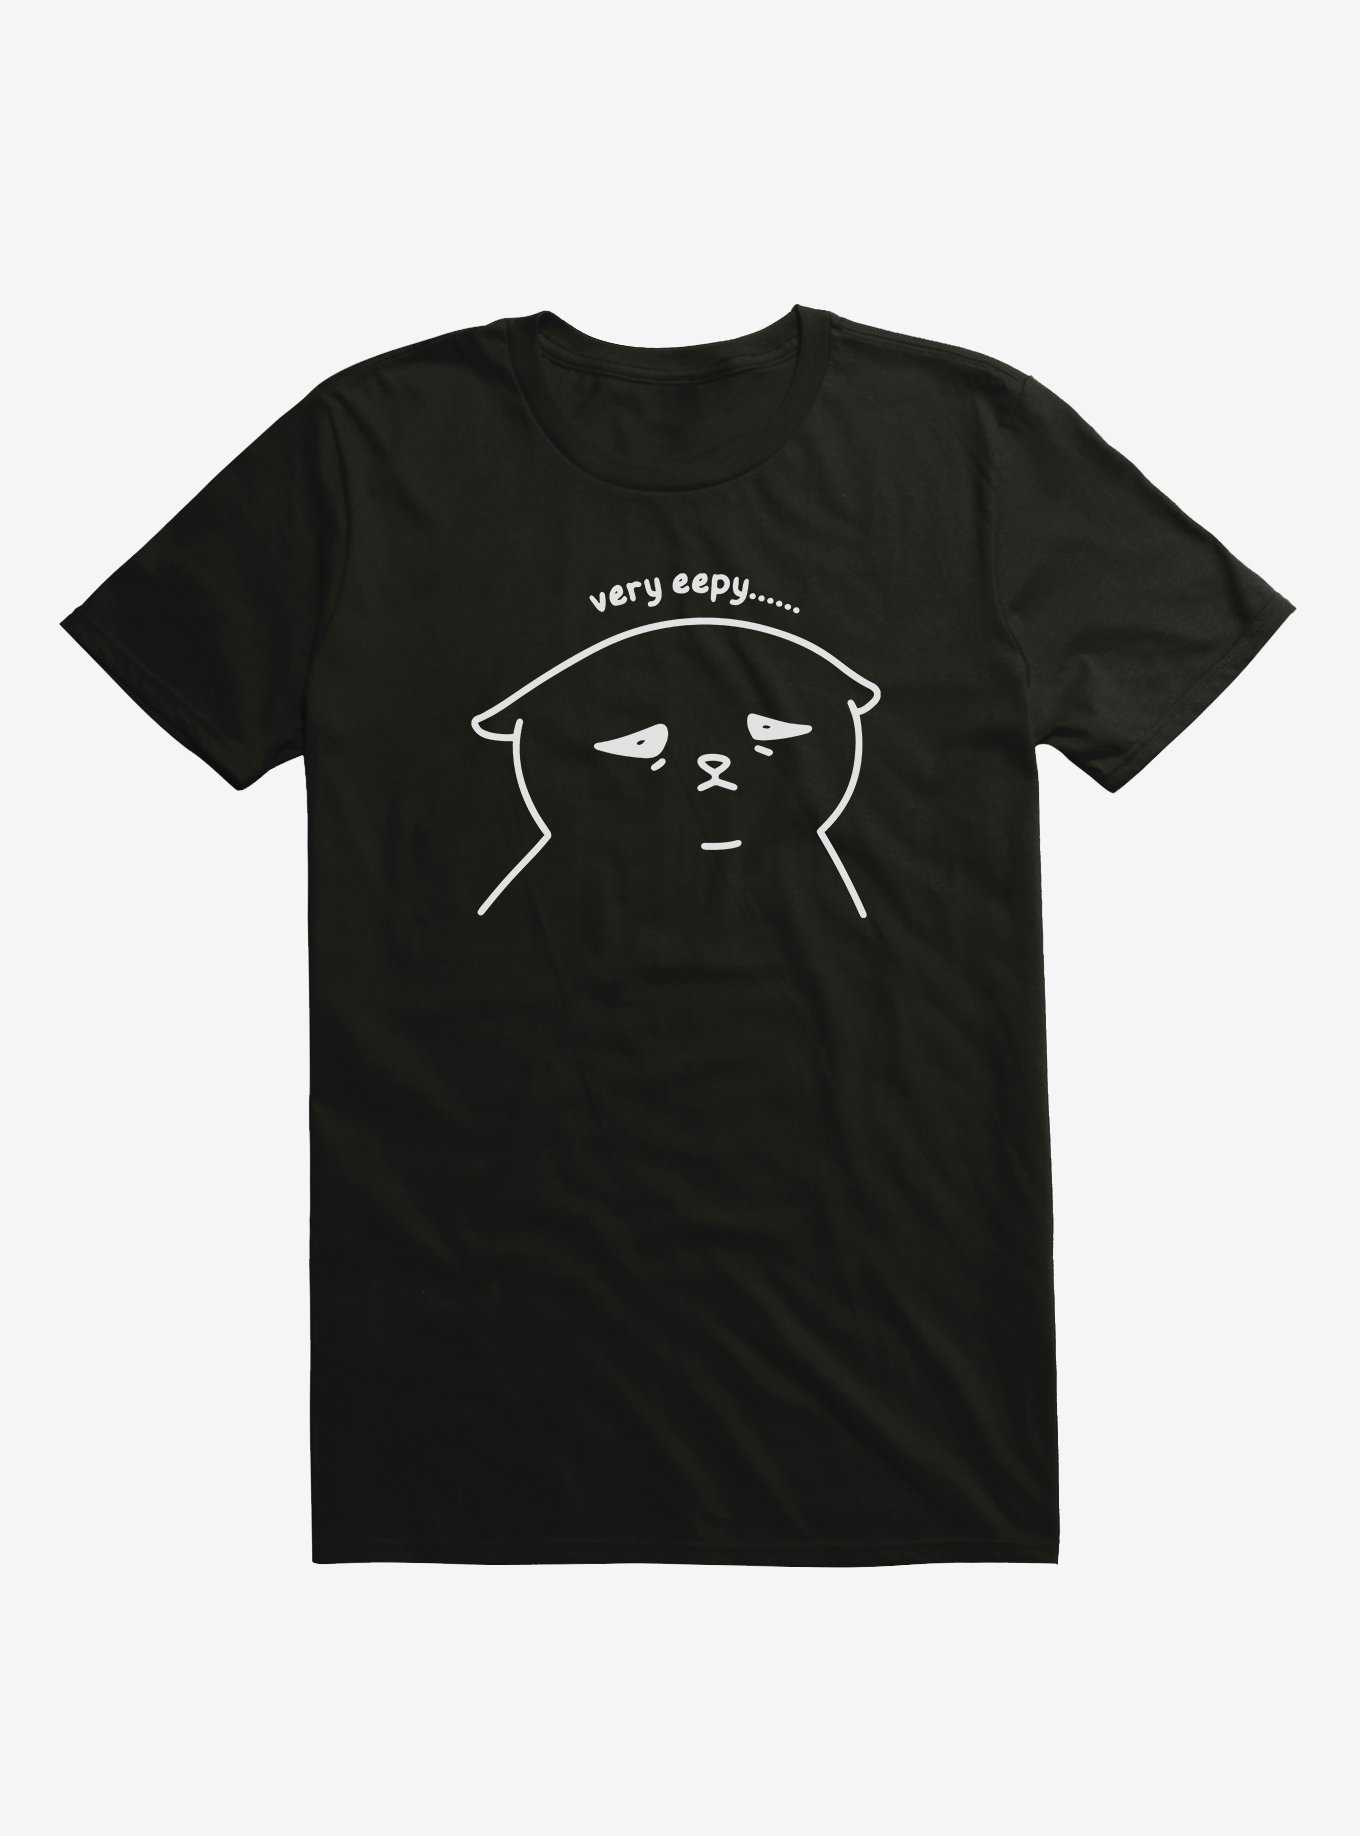 Very Eepy Cat T-Shirt By Heloisa, , hi-res